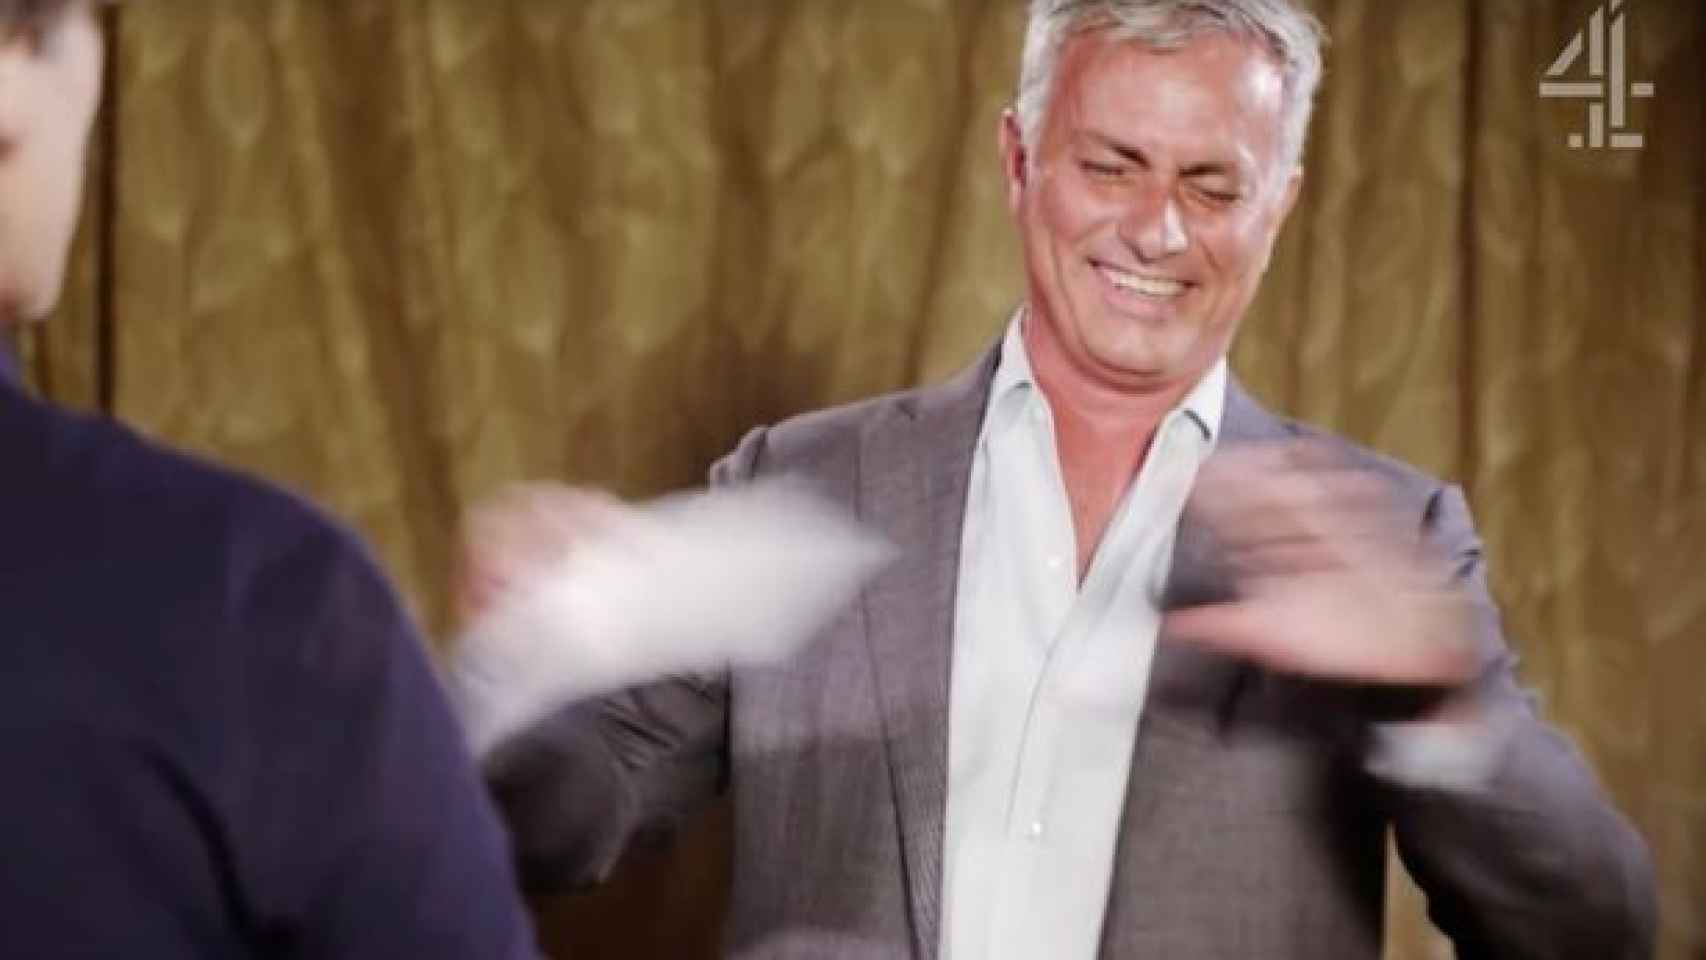 Mourinho participa en la 'Batalla de los chistes malos' por una buena causa